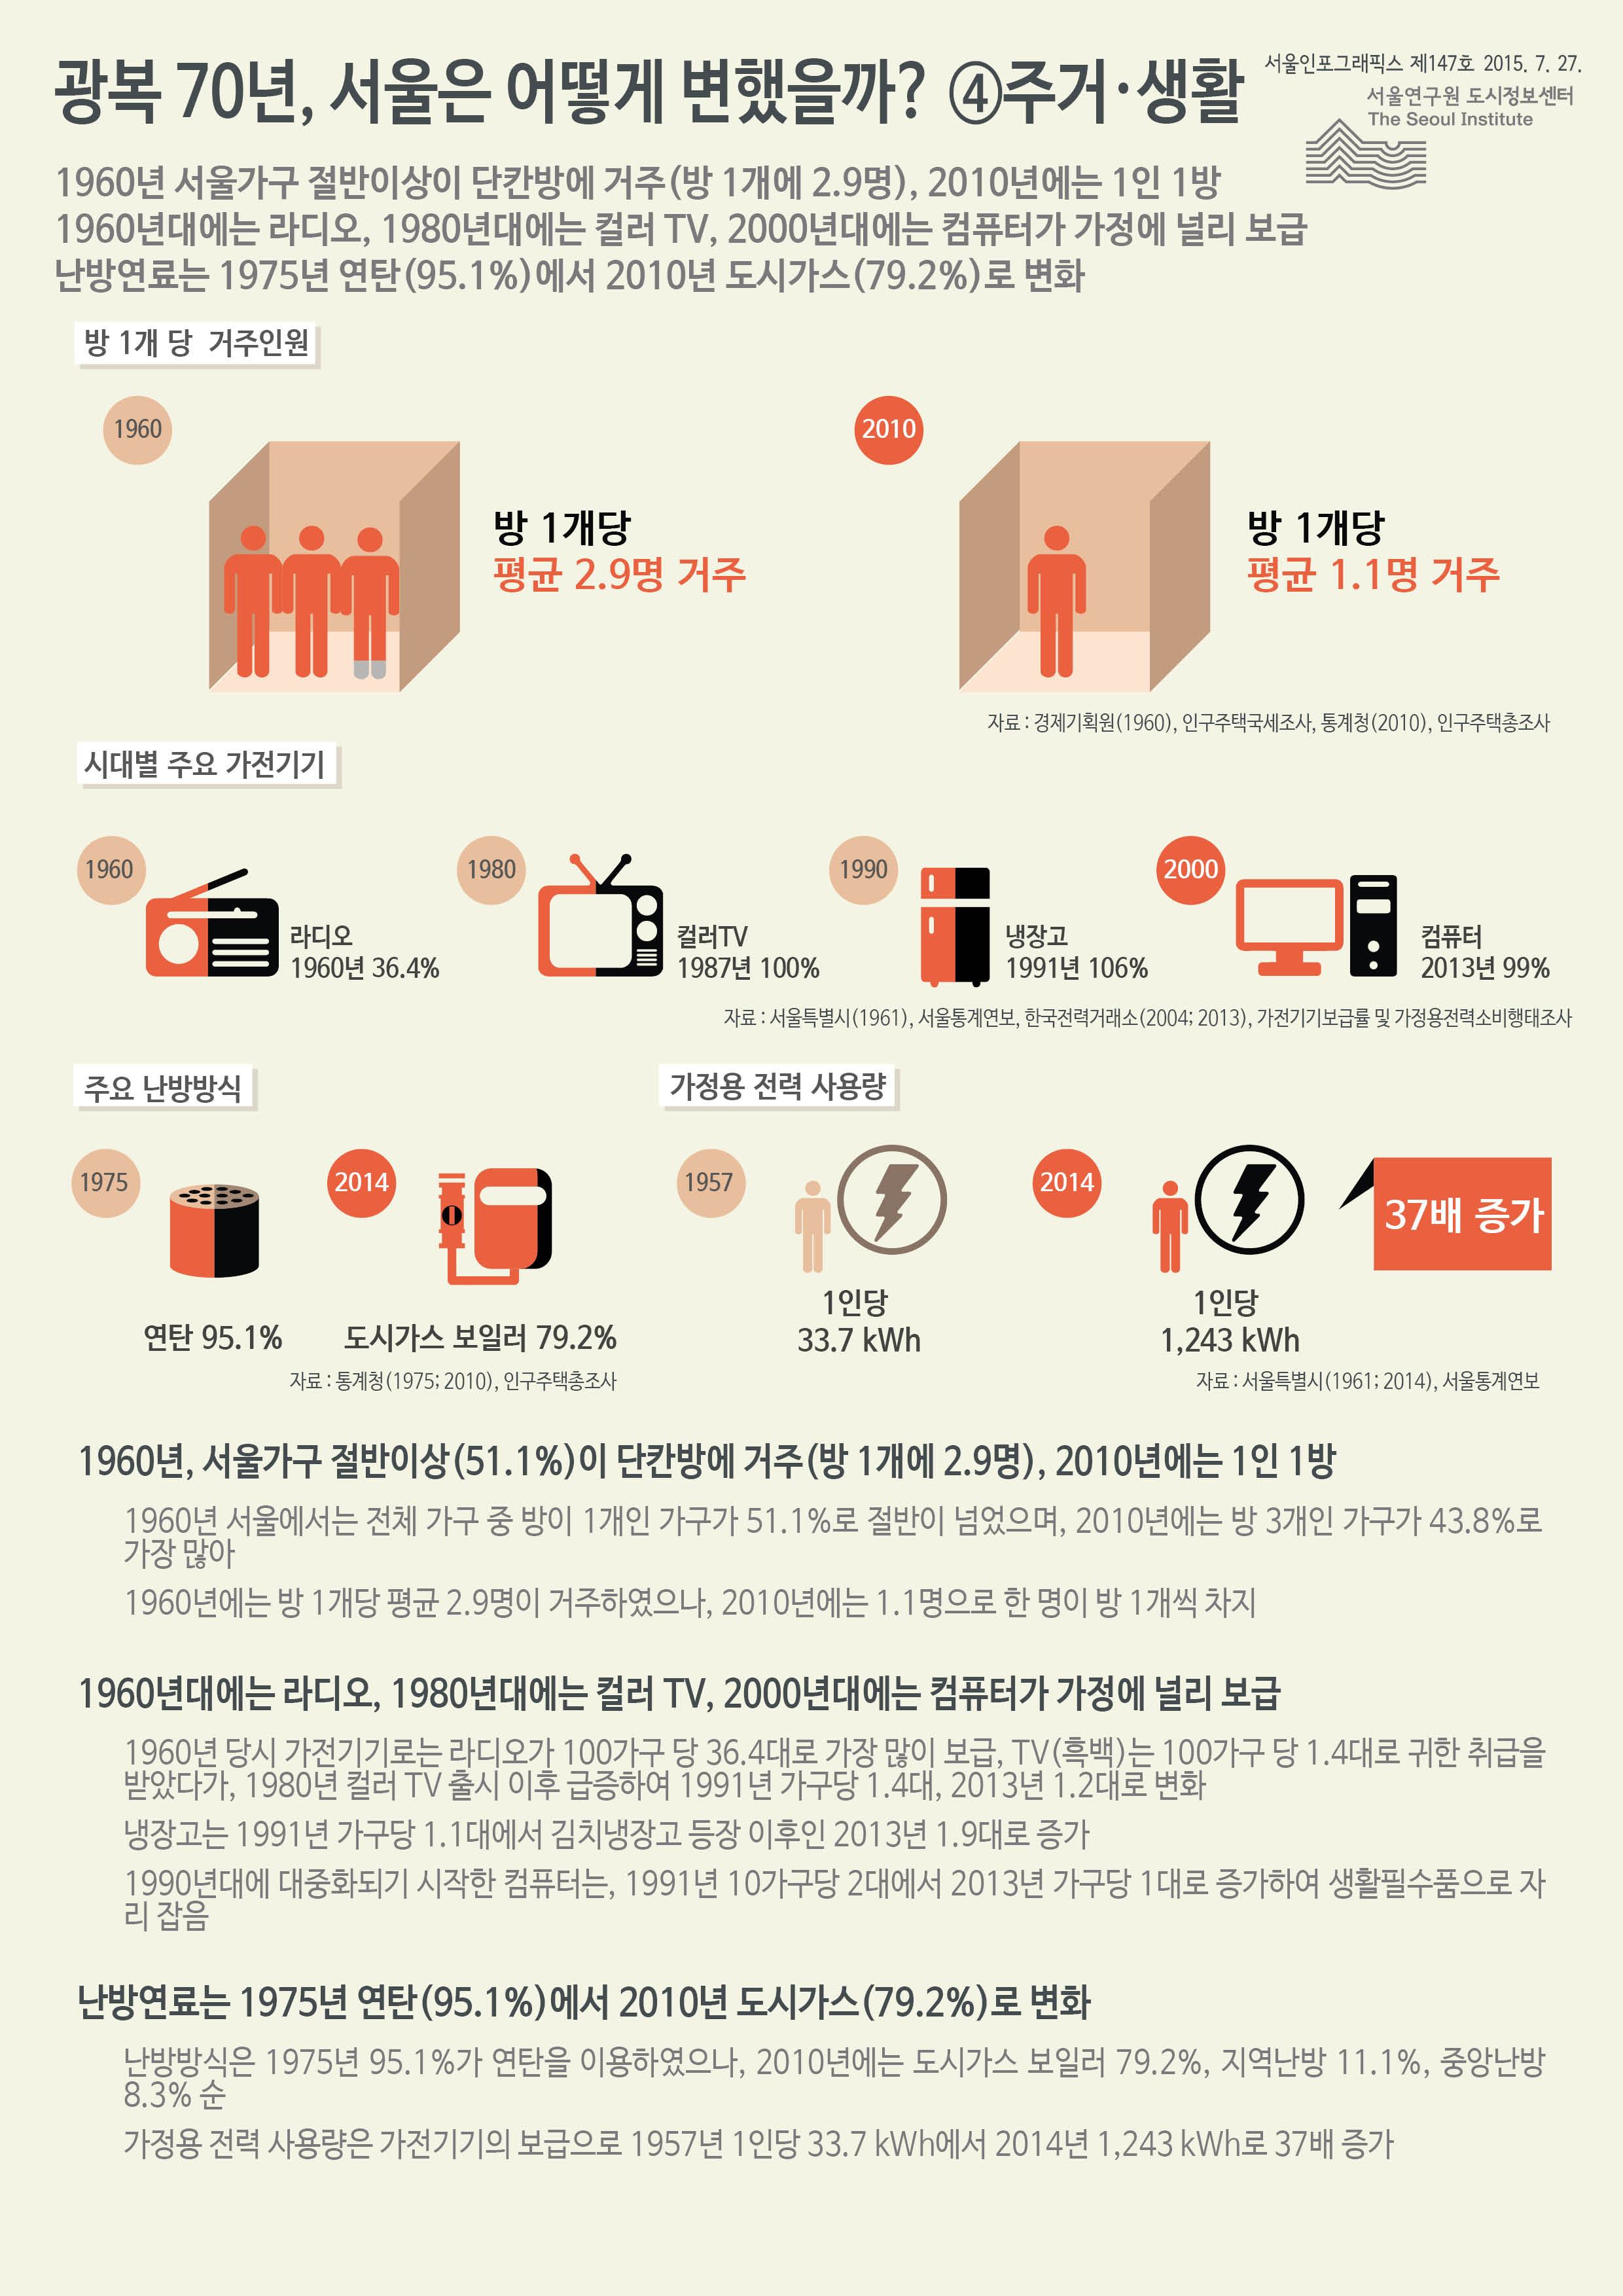 광복 70년, 서울은 어떻게 변했을까? ⑤ 주거·생활 서울인포그래픽스 제147호 2015년 7월 27일 1960년 서울가구 절반이상이 단칸방에 거주(방 1개에 2.9명), 2010년에는 1인 1방. 1960년대에는 라디오, 1980년대에는 컬러 TV, 2000년대에는 컴퓨터가 가정에 널리 보급. 난방연료는 1975년 연탄 95.1%에서 2010년 도시가스 79.2%로 변화함으로 정리될 수 있습니다. 인포그래픽으로 제공되는 그래픽은 하단에 표로 자세히 제공됩니다.